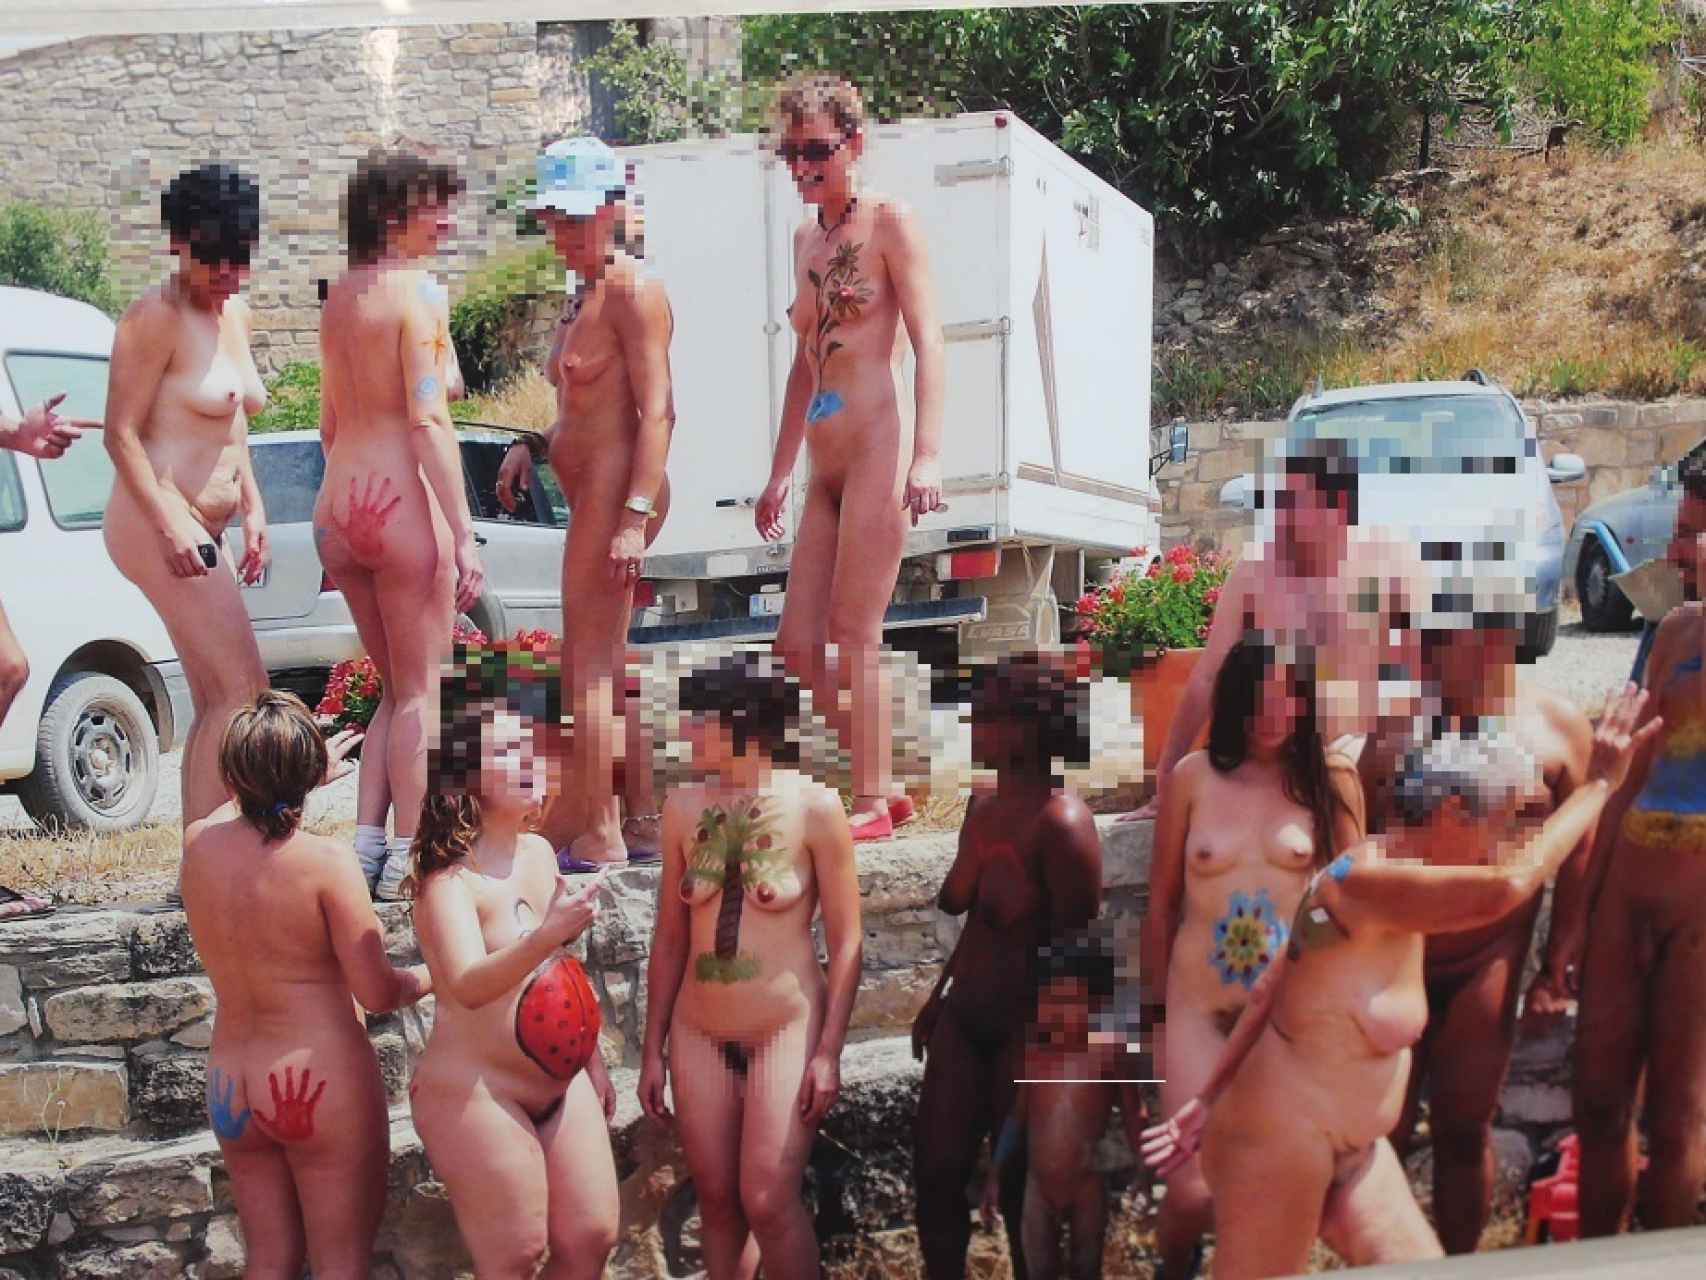 20 años en pelotas: El Fonoll, el pueblo desnudo donde la vida parece un  reality show